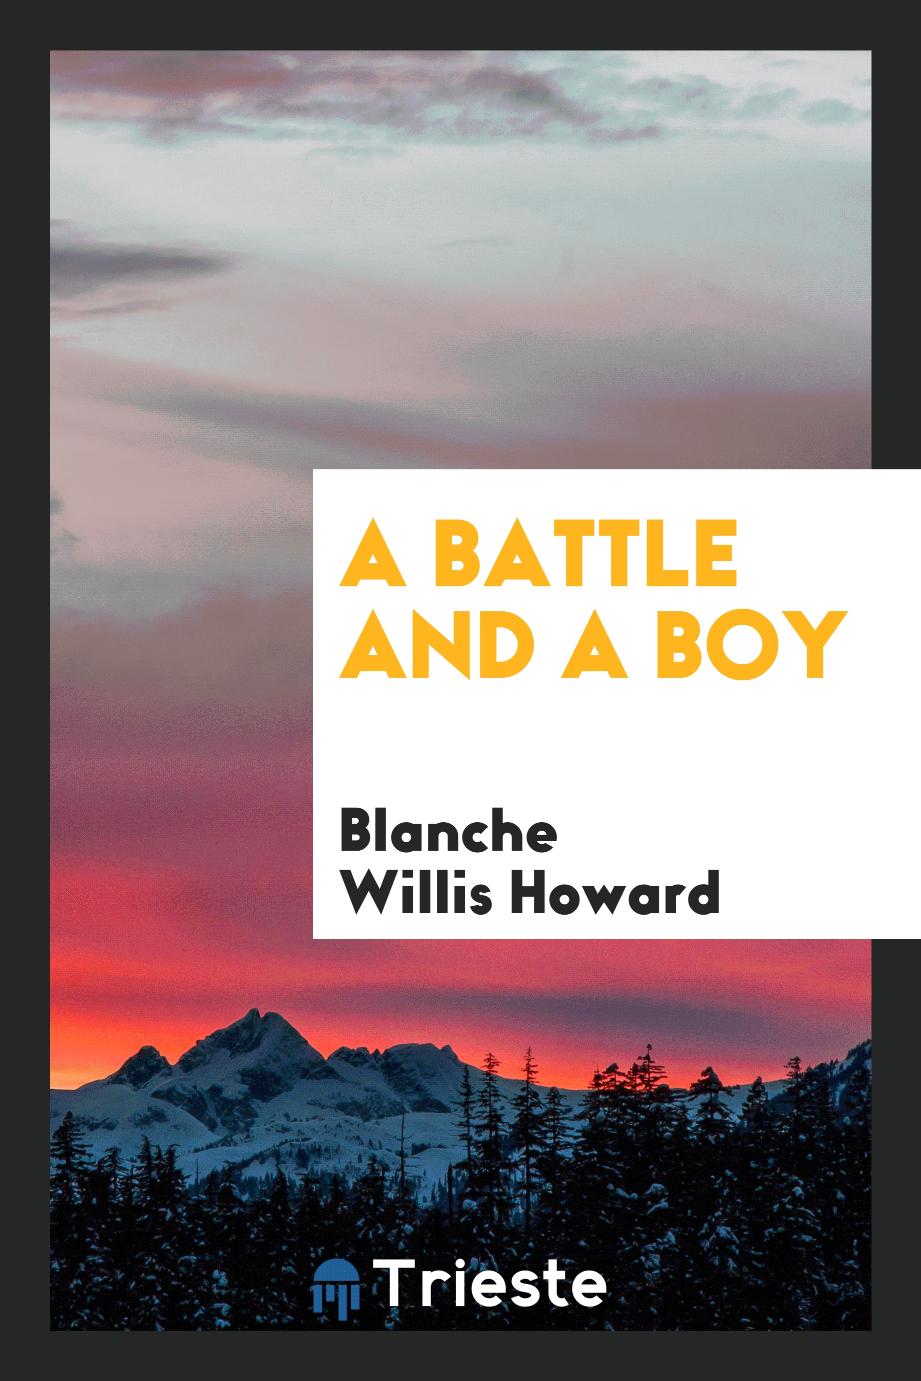 A battle and a boy